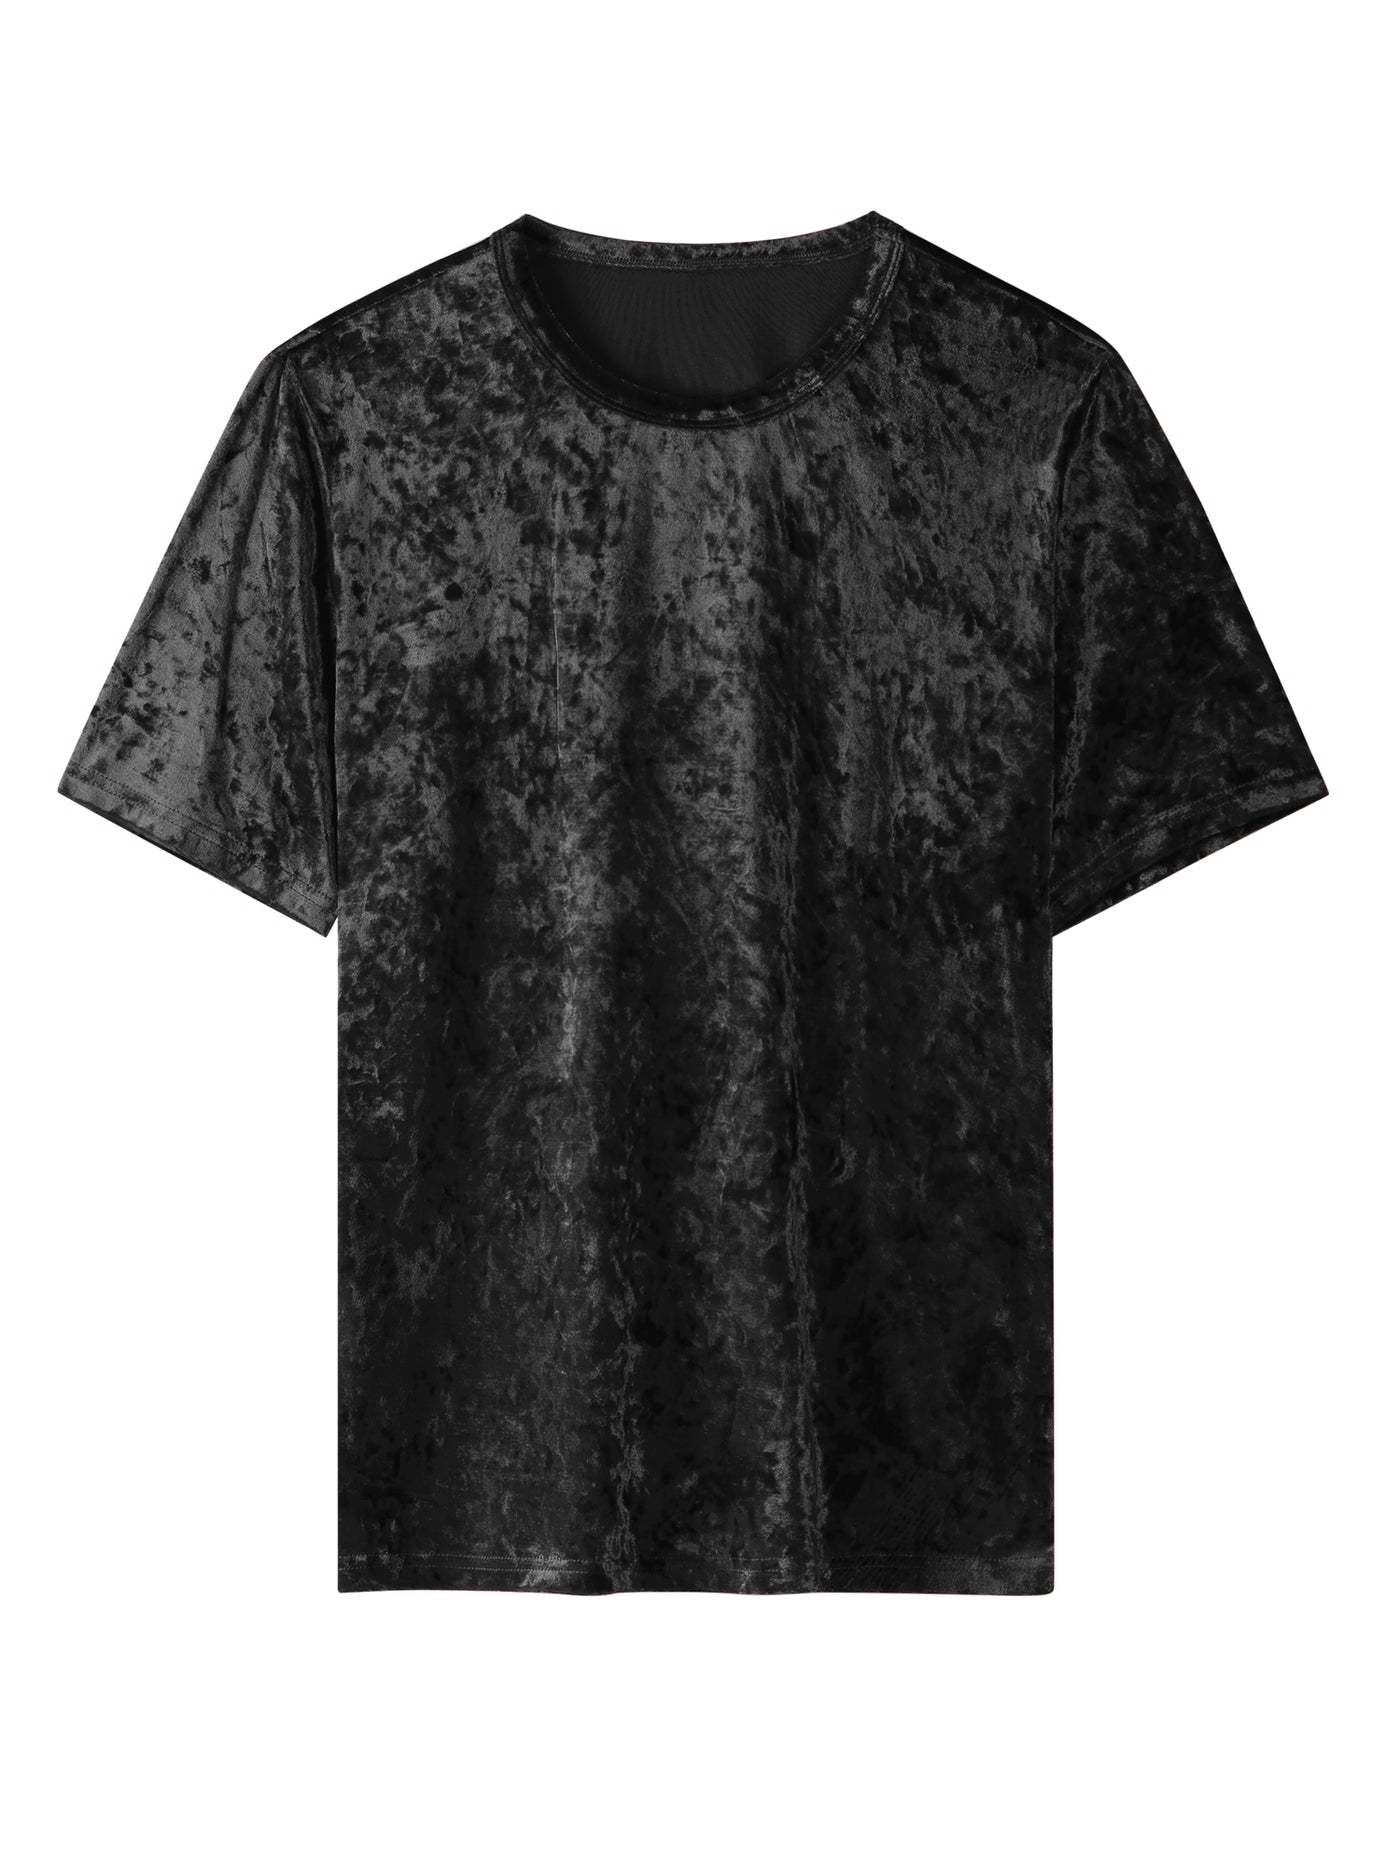 Bublédon Velvet T-Shirt for Men's Short Sleeve Crew Neck Velour Tee Tops Shirts